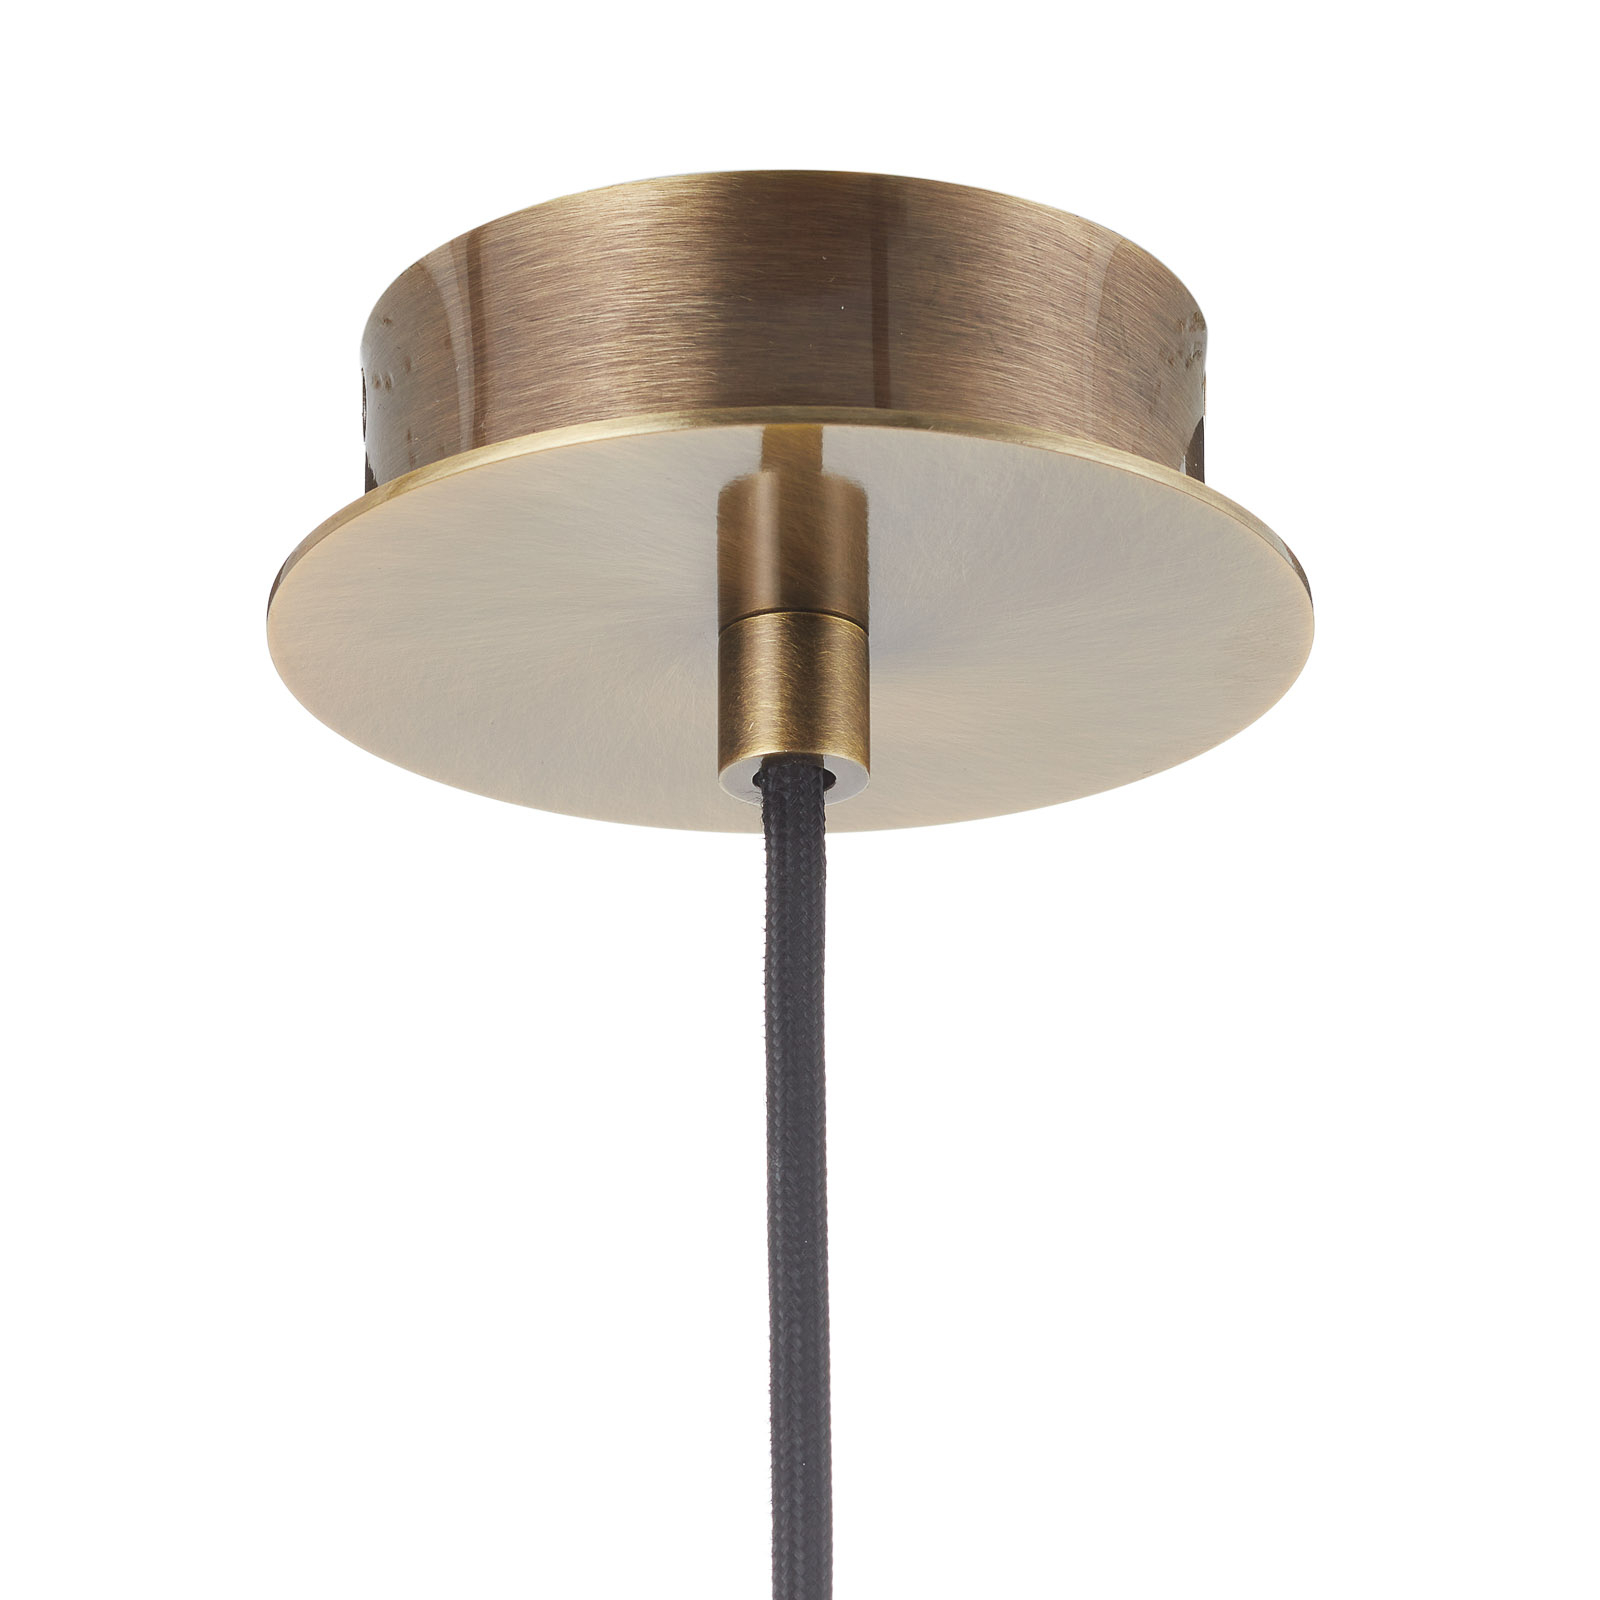 Bover Tibeta 03 LED hanging light in antique brass